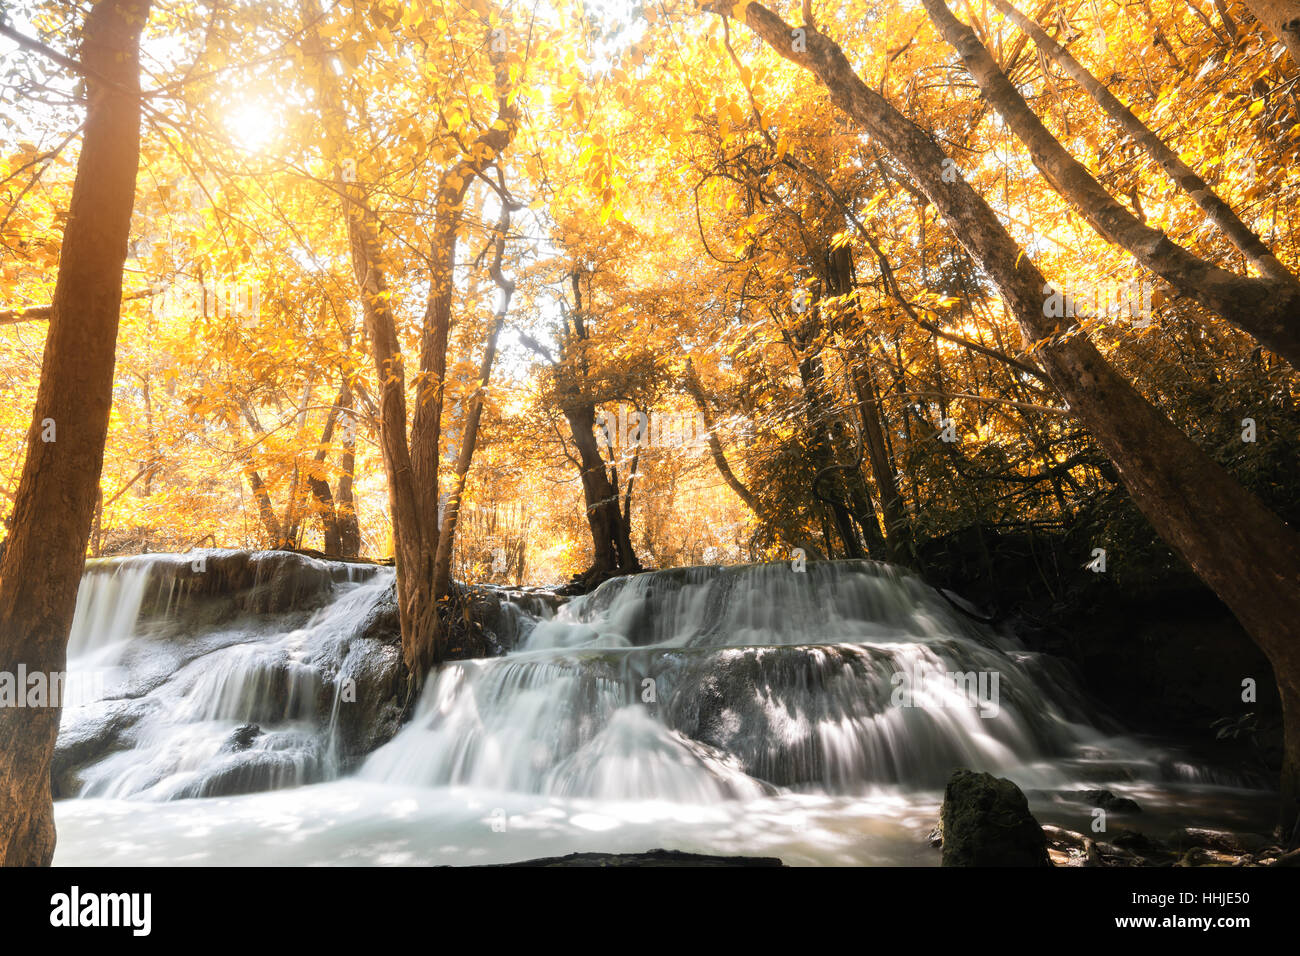 Huay MaeKamin Wasserfall ist schöner Wasserfall im herbstlichen Wald, Provinz Kanchanaburi, Thailand. Stockfoto